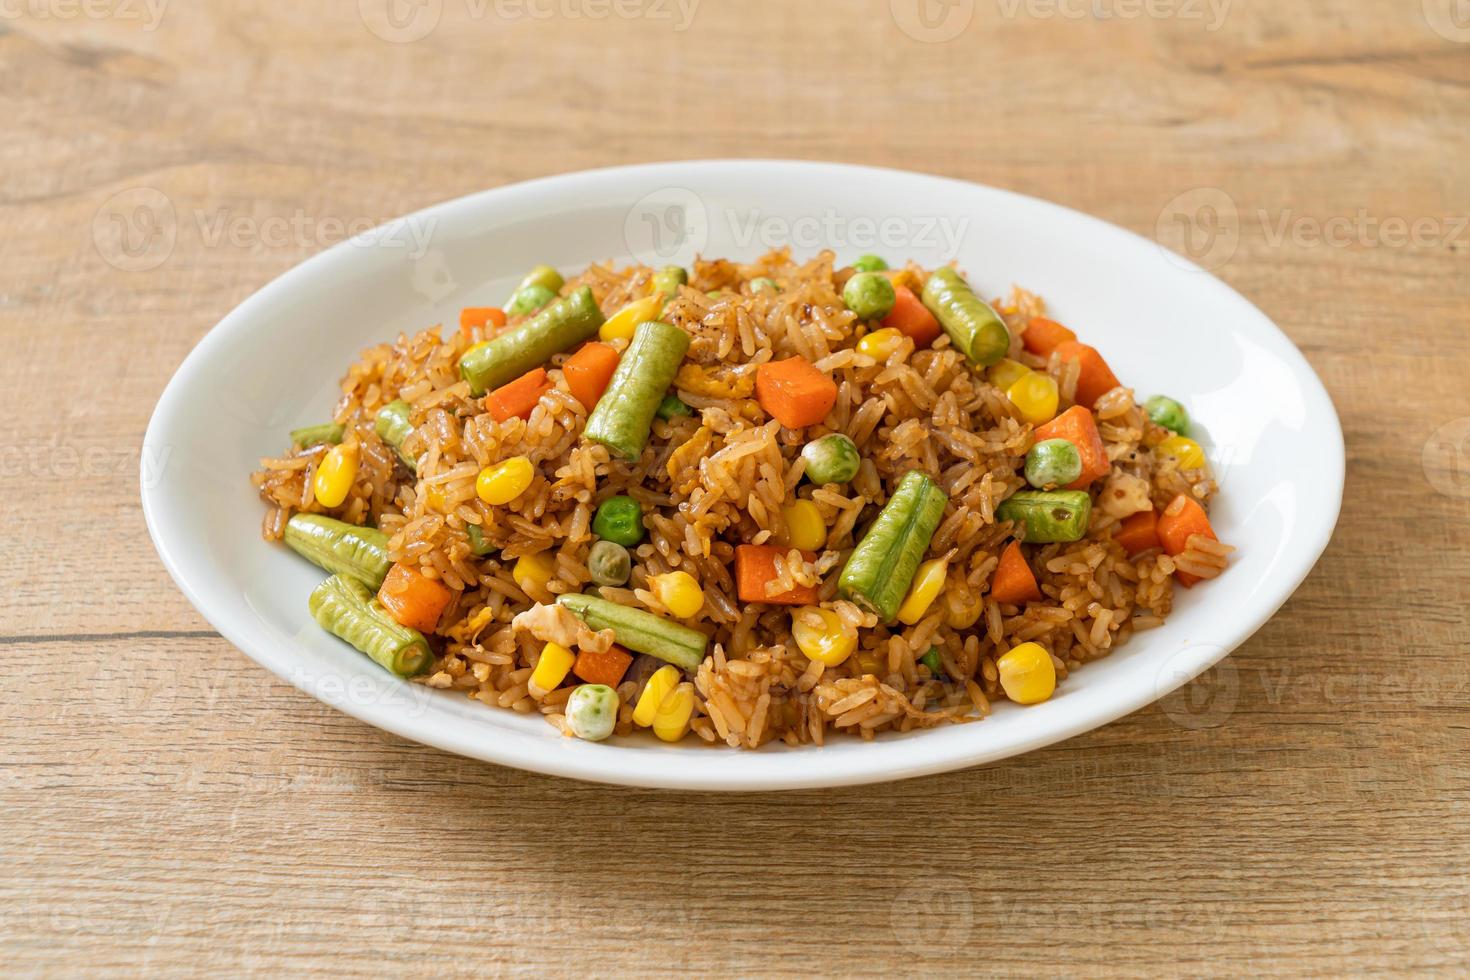 arroz frito com ervilhas, cenoura e milho - estilo de comida vegetariana e saudável foto